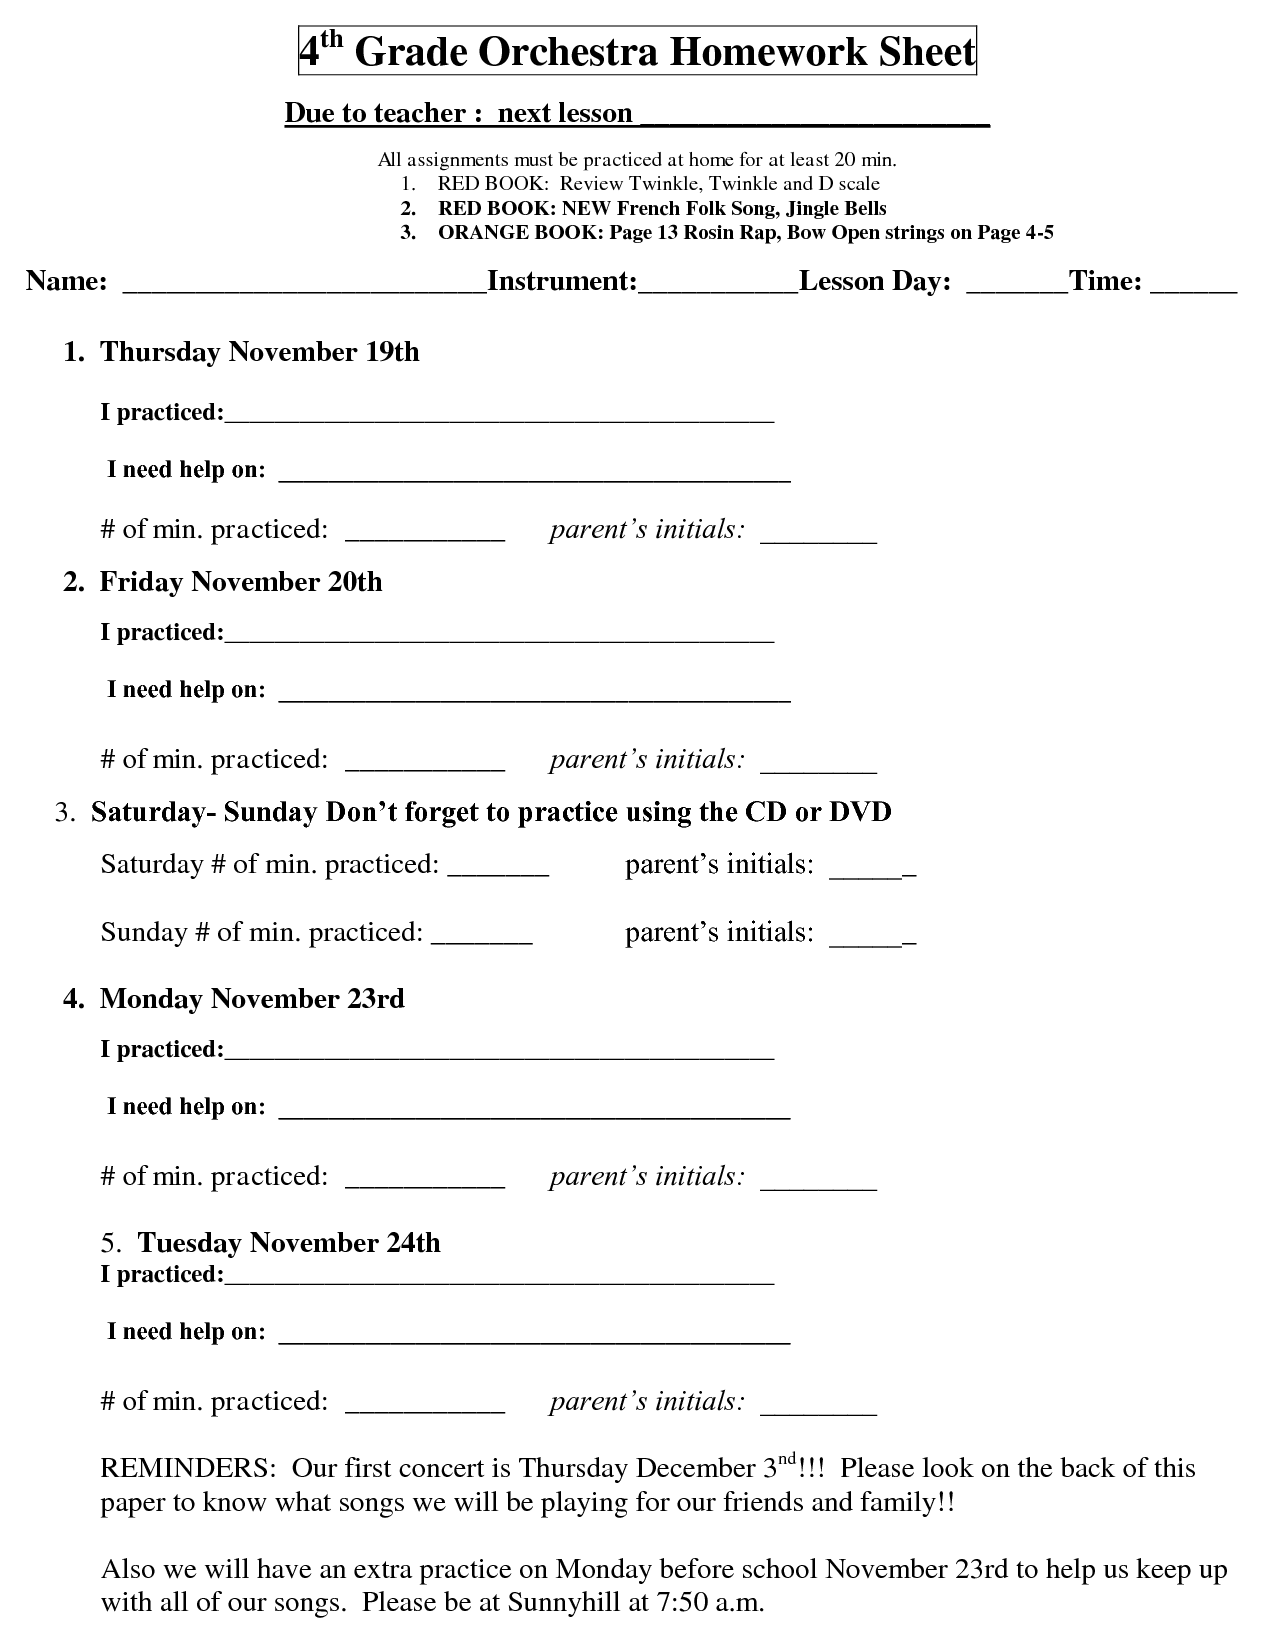 Homework Sheets For 5th Grade Copywritinglyrics x fc2